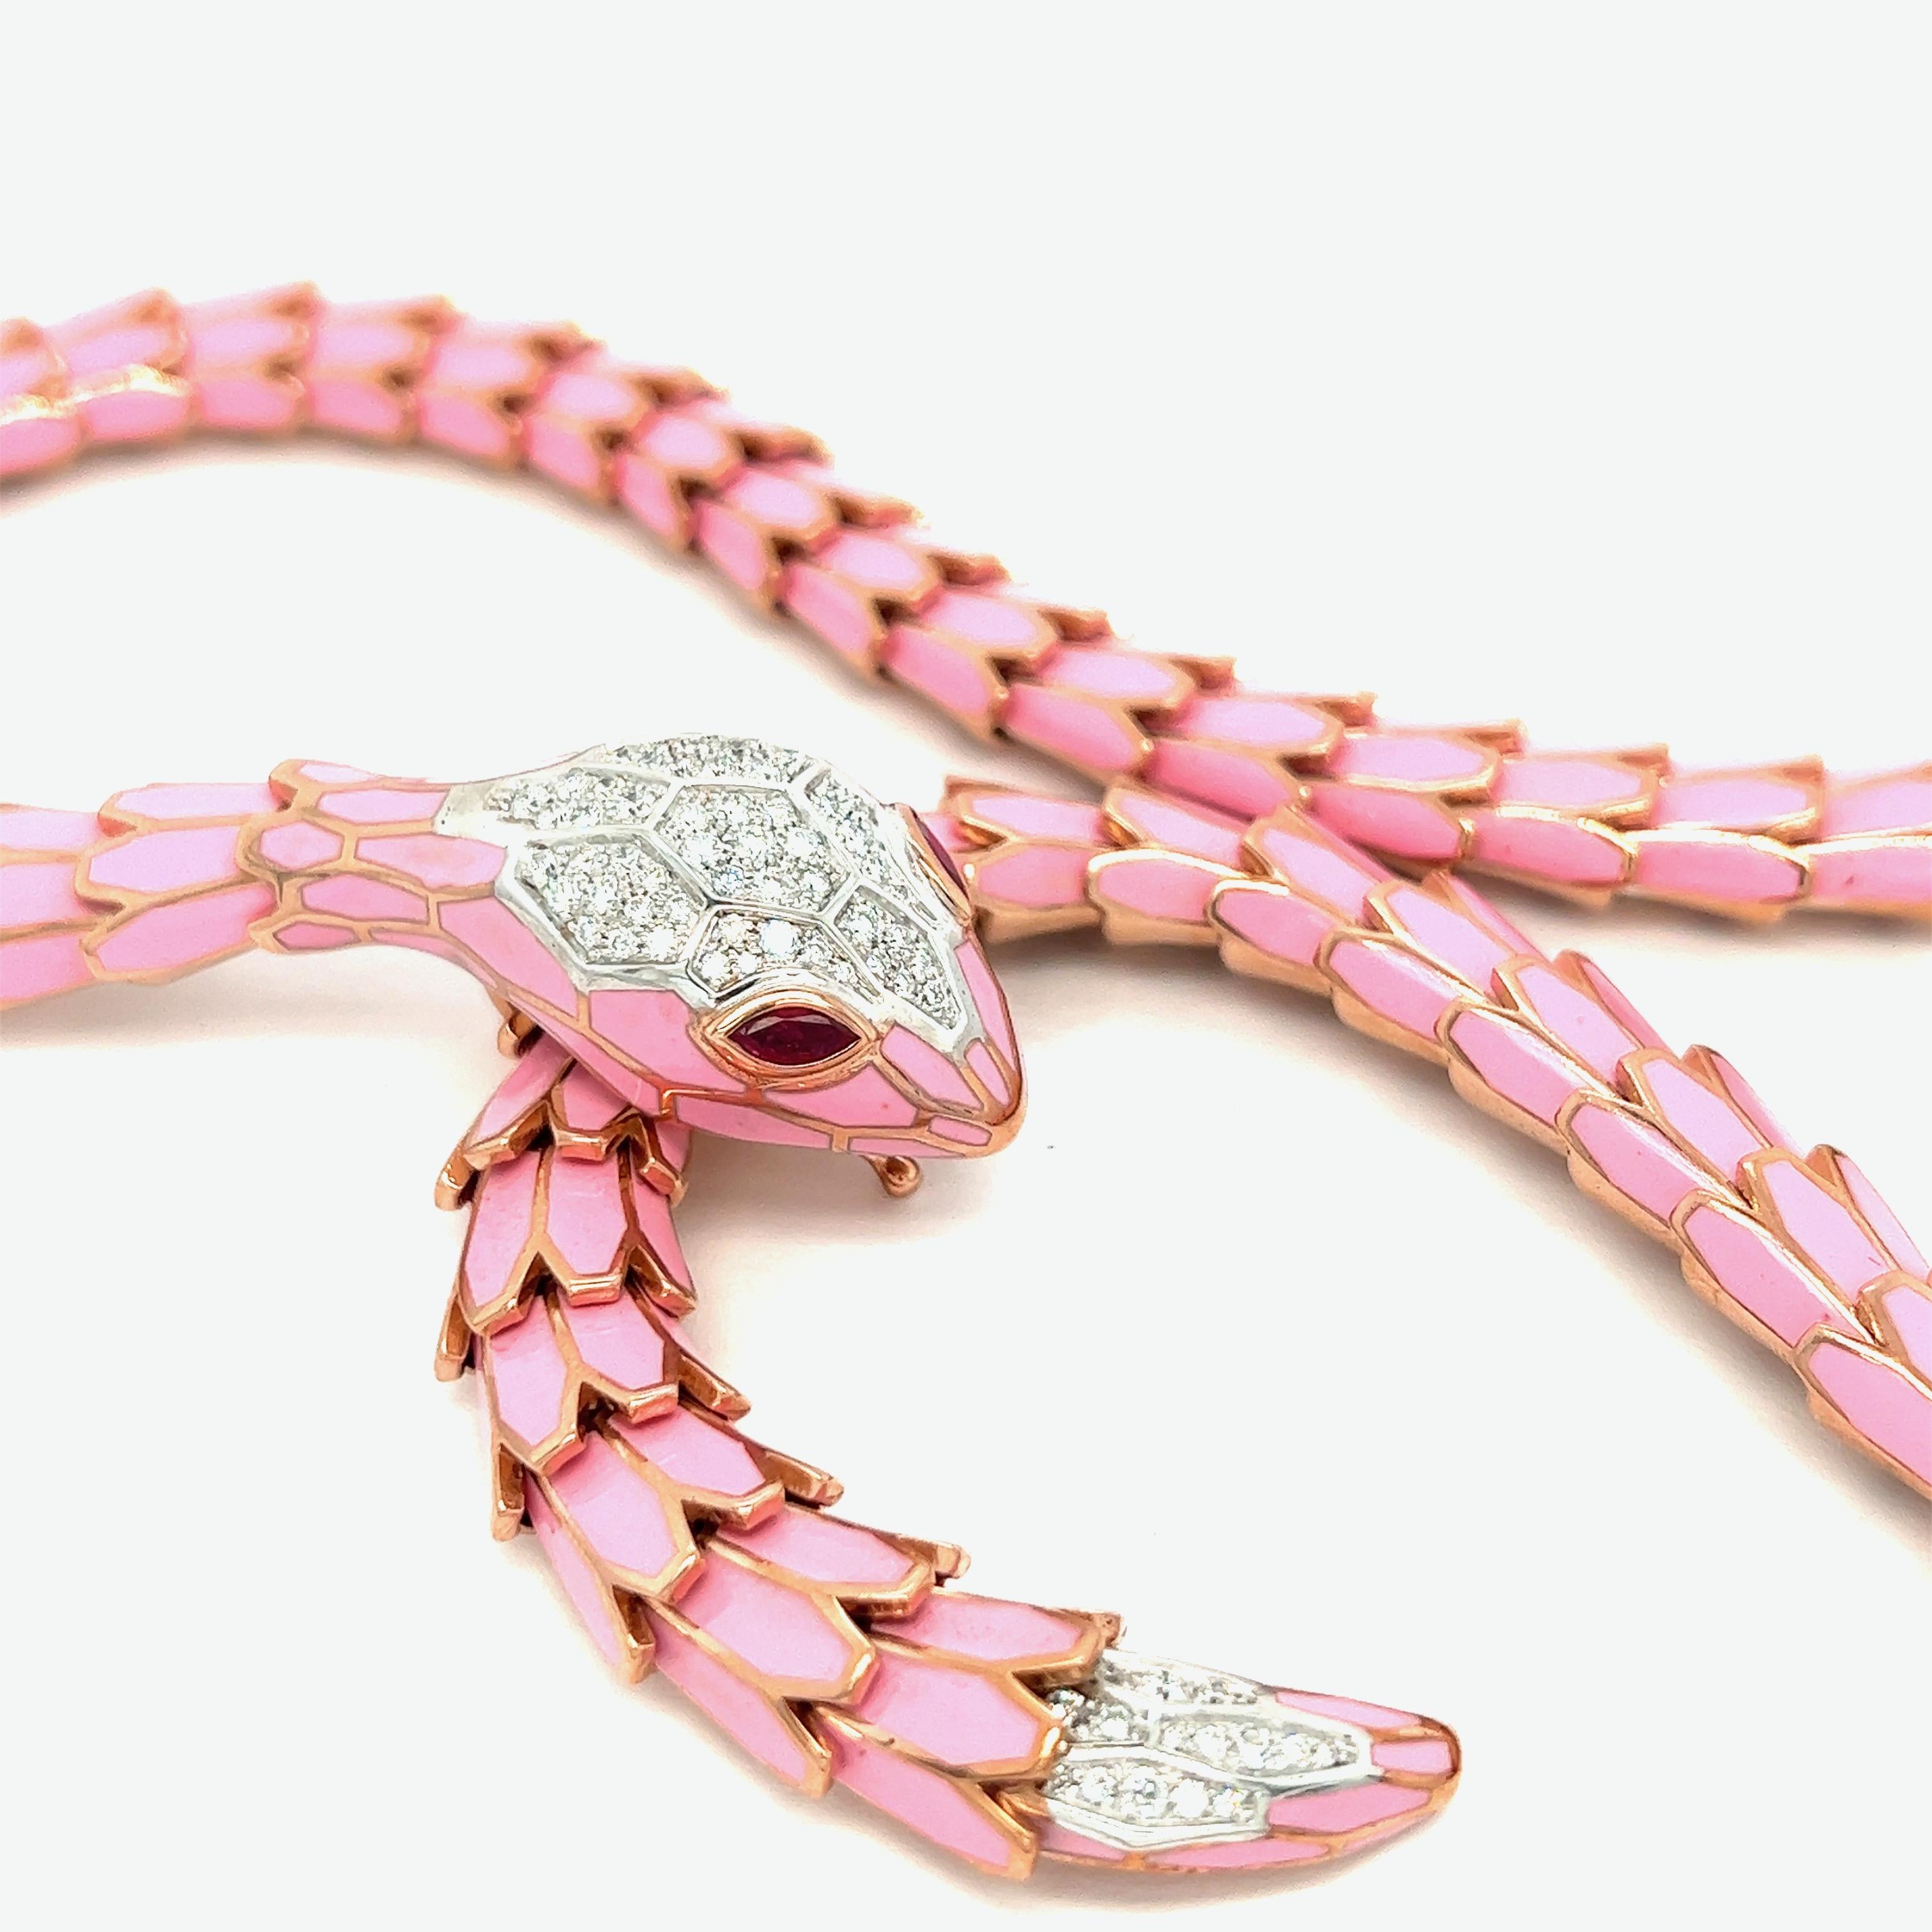 Collier serpent émaillé rose moyen, modèle court

Diamants ronds de 1,20 carats, rubis de forme marquise de 0,56 carat, or blanc 18 carats, argent avec un ton d'or rose ; marqué 750, 925, D. 1,20, R. 0,56, N012RM10-0096

Taille : longueur 20.75